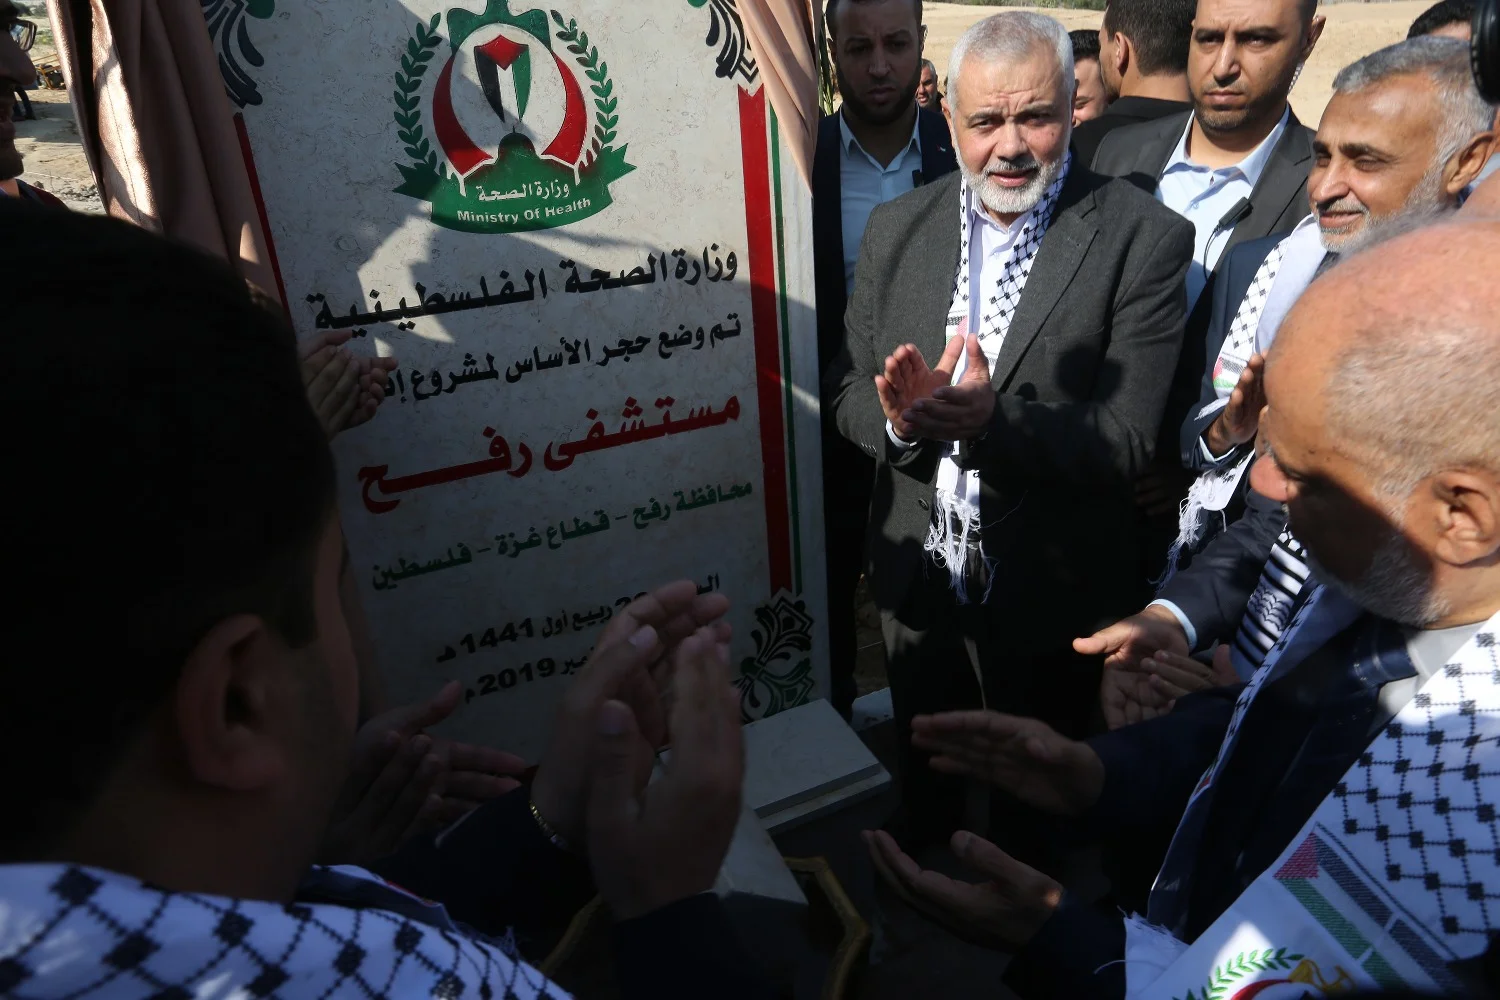 Hamasove ideje po osvoboditvi Palestine: Judje bodo smeli oditi, a ne vsi